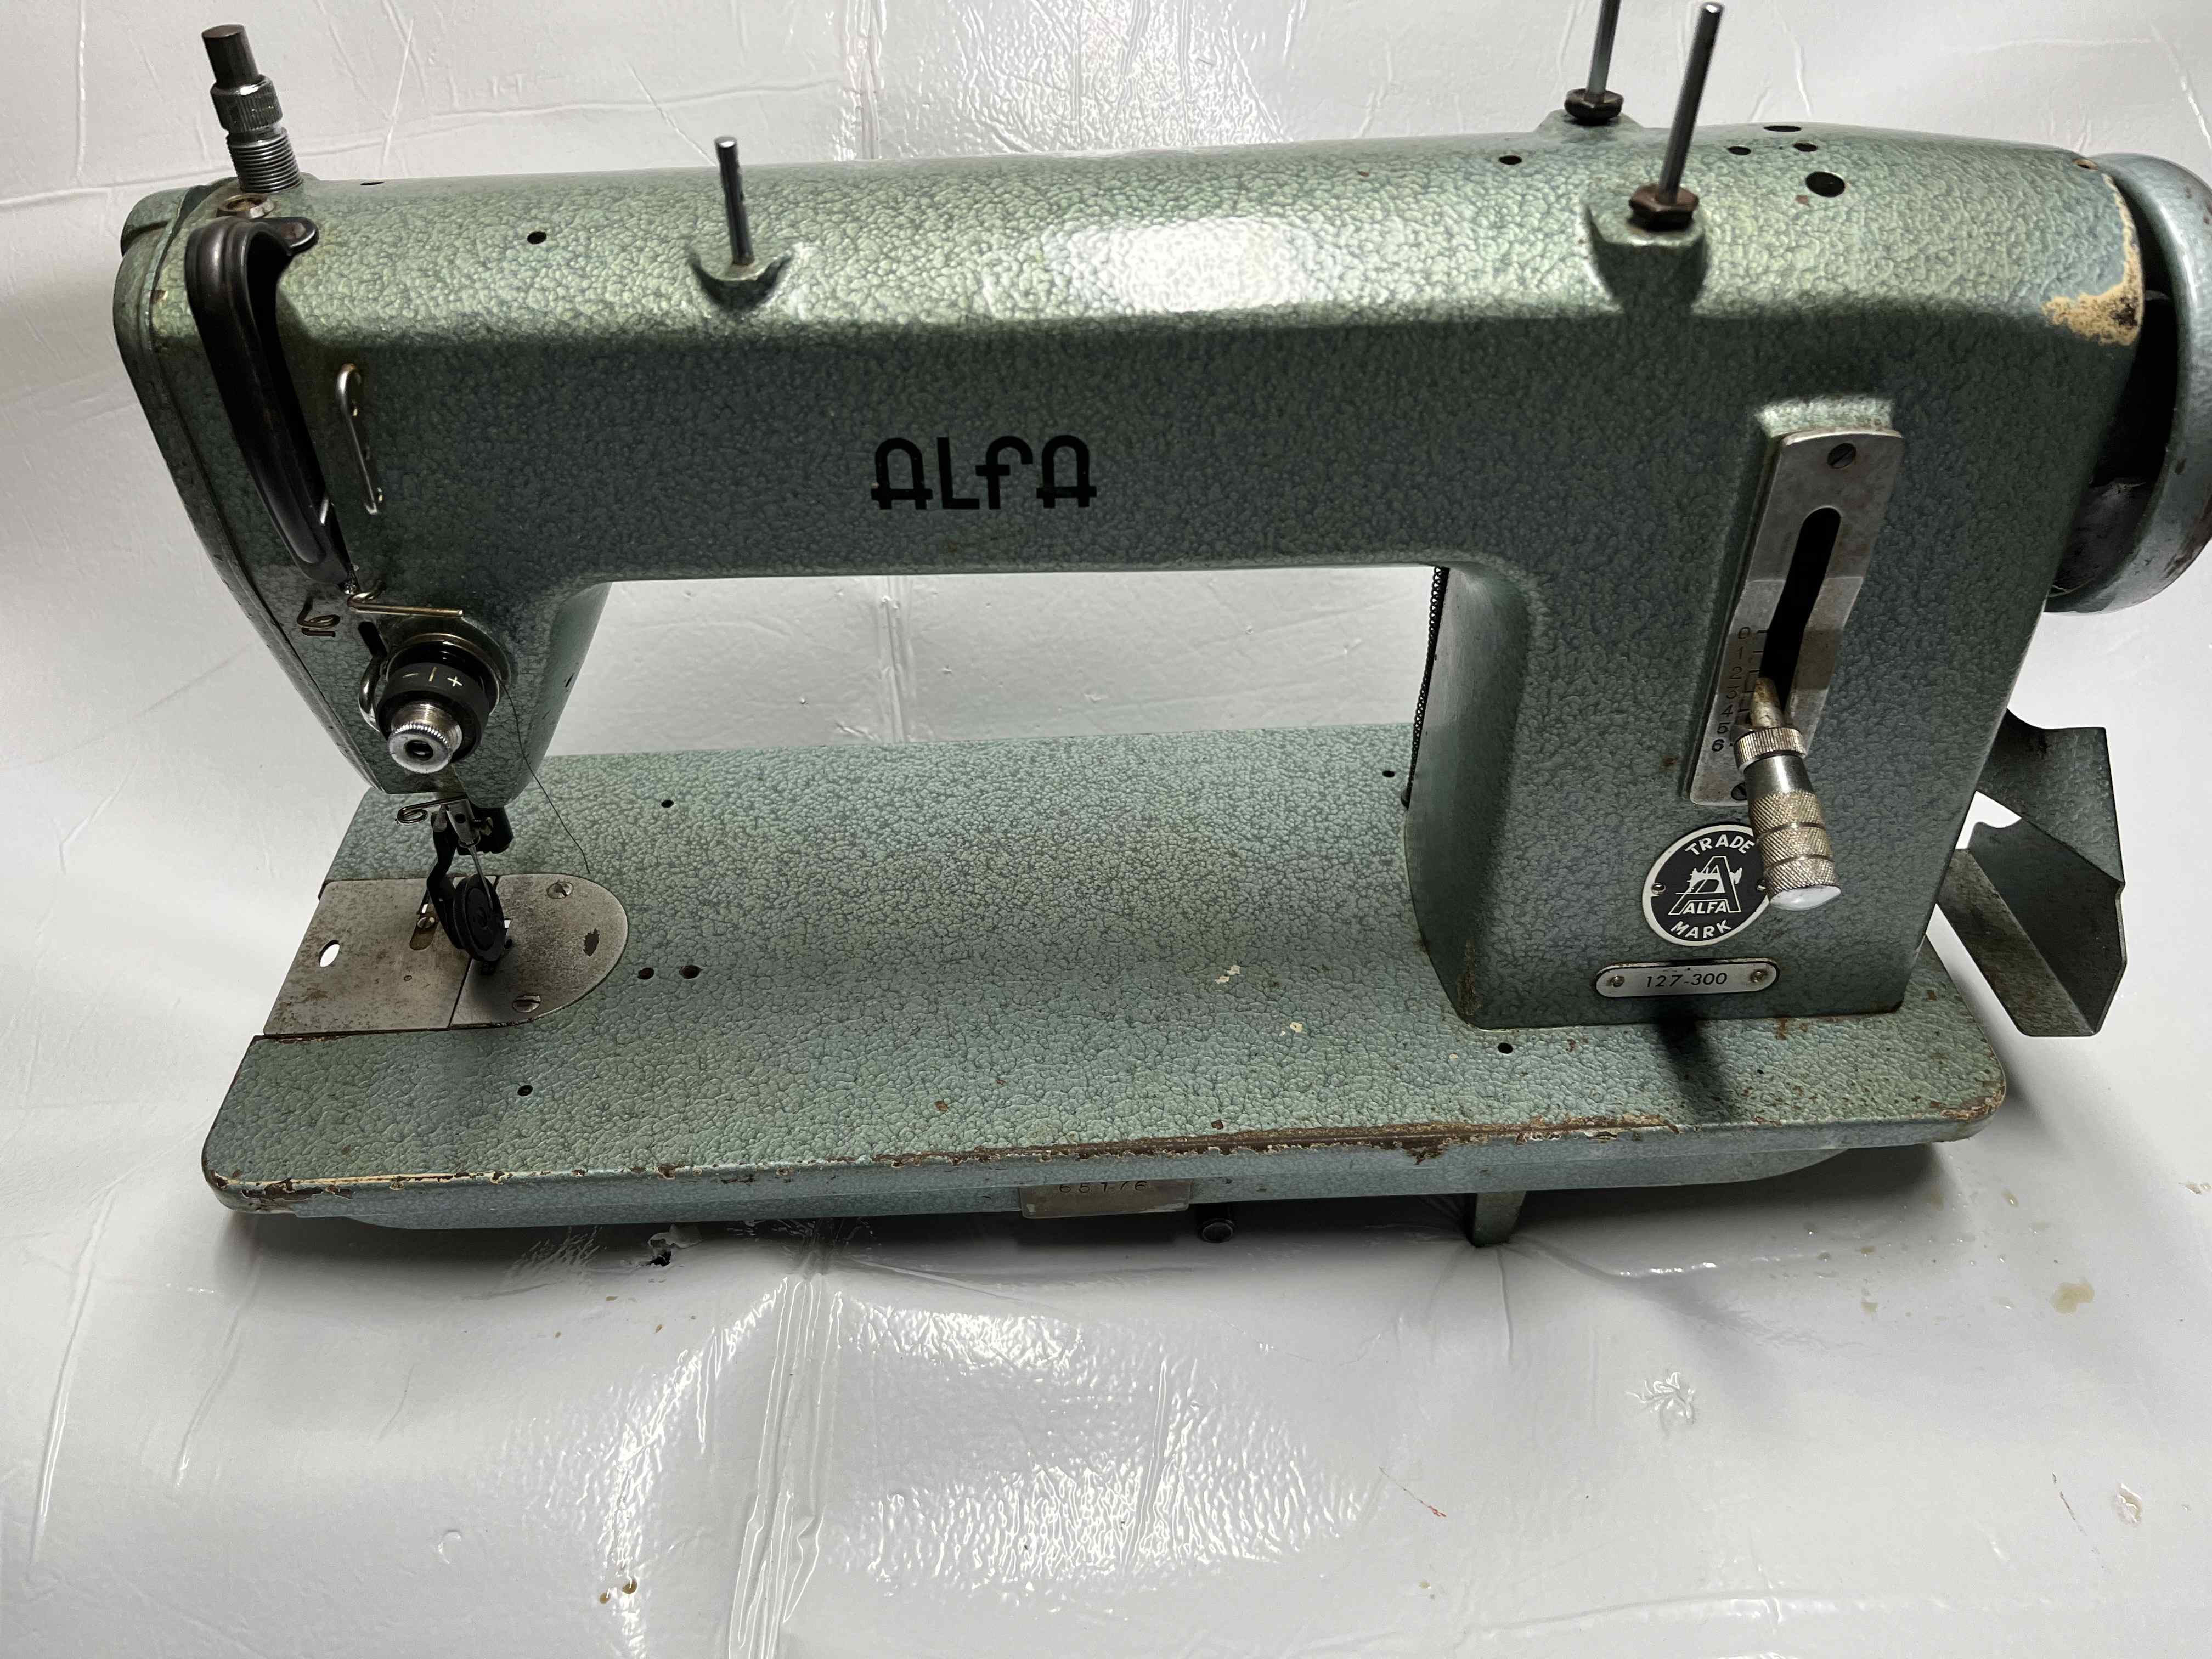 Macchina cucire Alfa 127-300  in vendita - foto 1